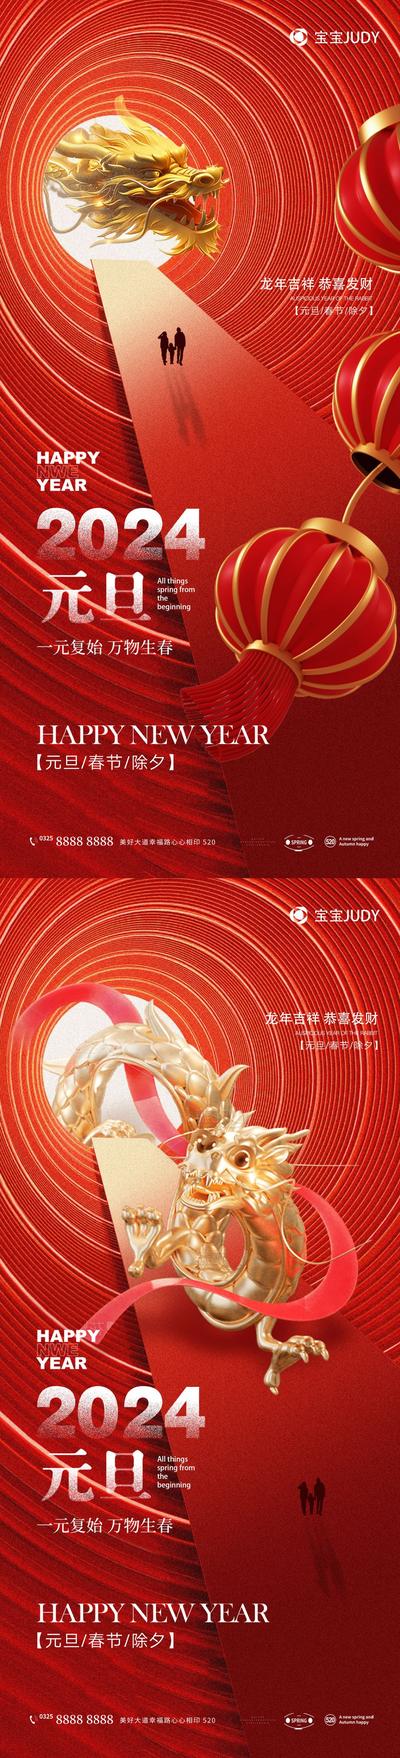 【南门网】广告 海报 节日 元旦 新年 春节 龙年 2024 系列 大气 品质